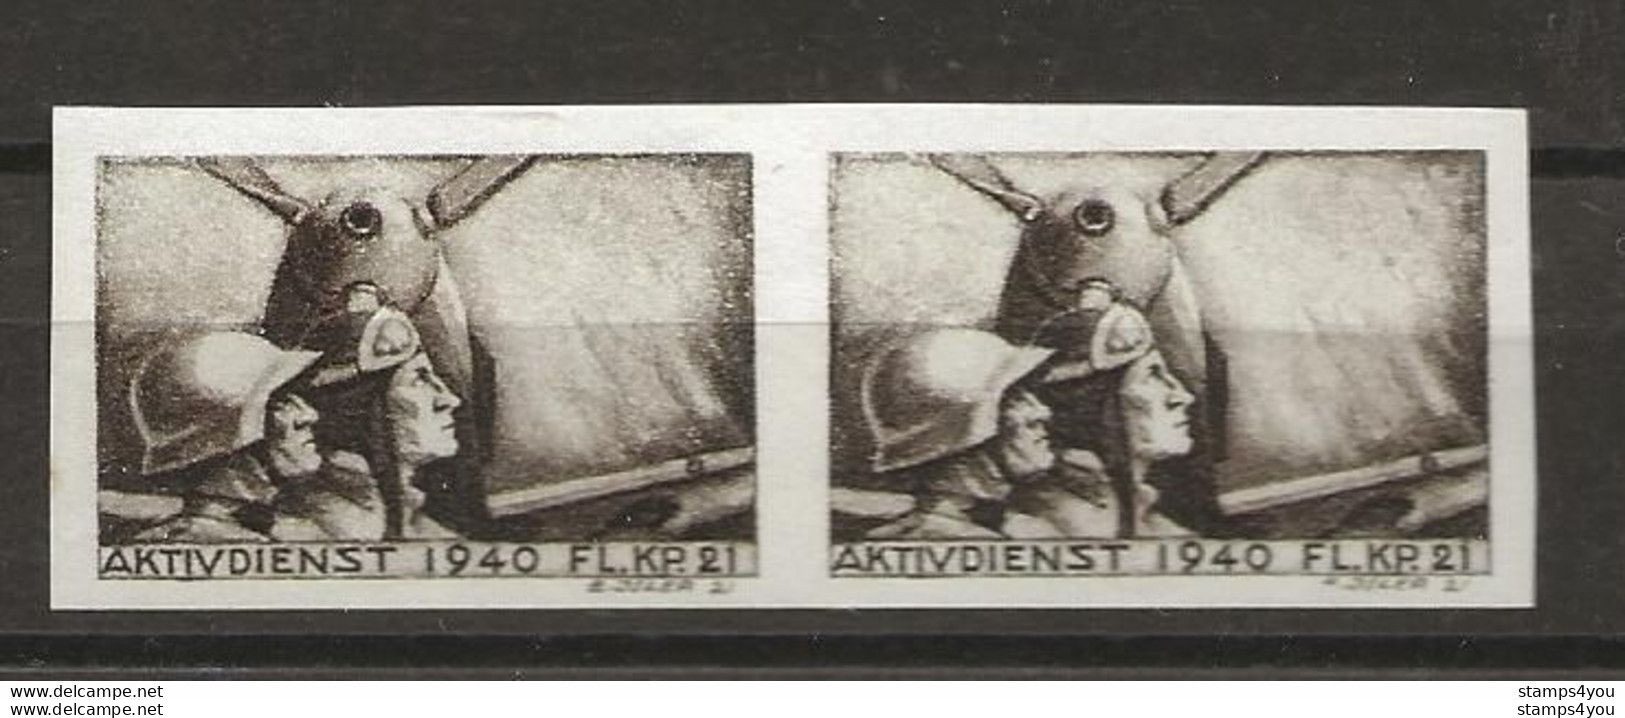 406 - 5b - Paire Timbres Non-dentelés Neufs  "Aktivdienst 1940 Fl. Kp. 21" - Labels